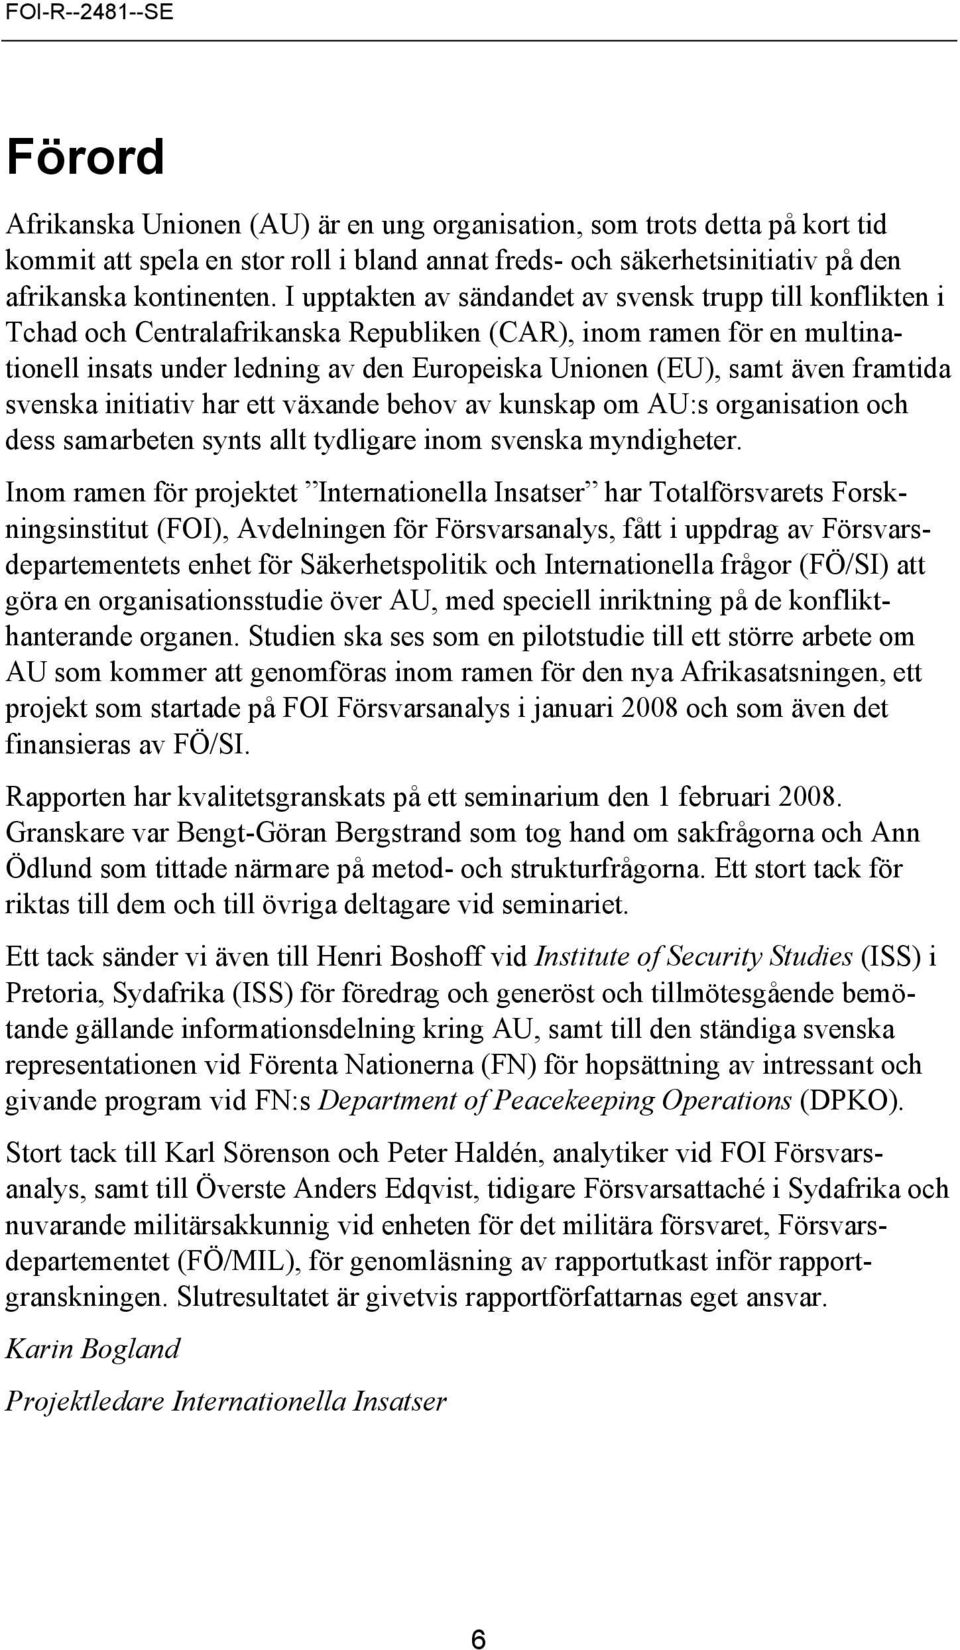 även framtida svenska initiativ har ett växande behov av kunskap om AU:s organisation och dess samarbeten synts allt tydligare inom svenska myndigheter.